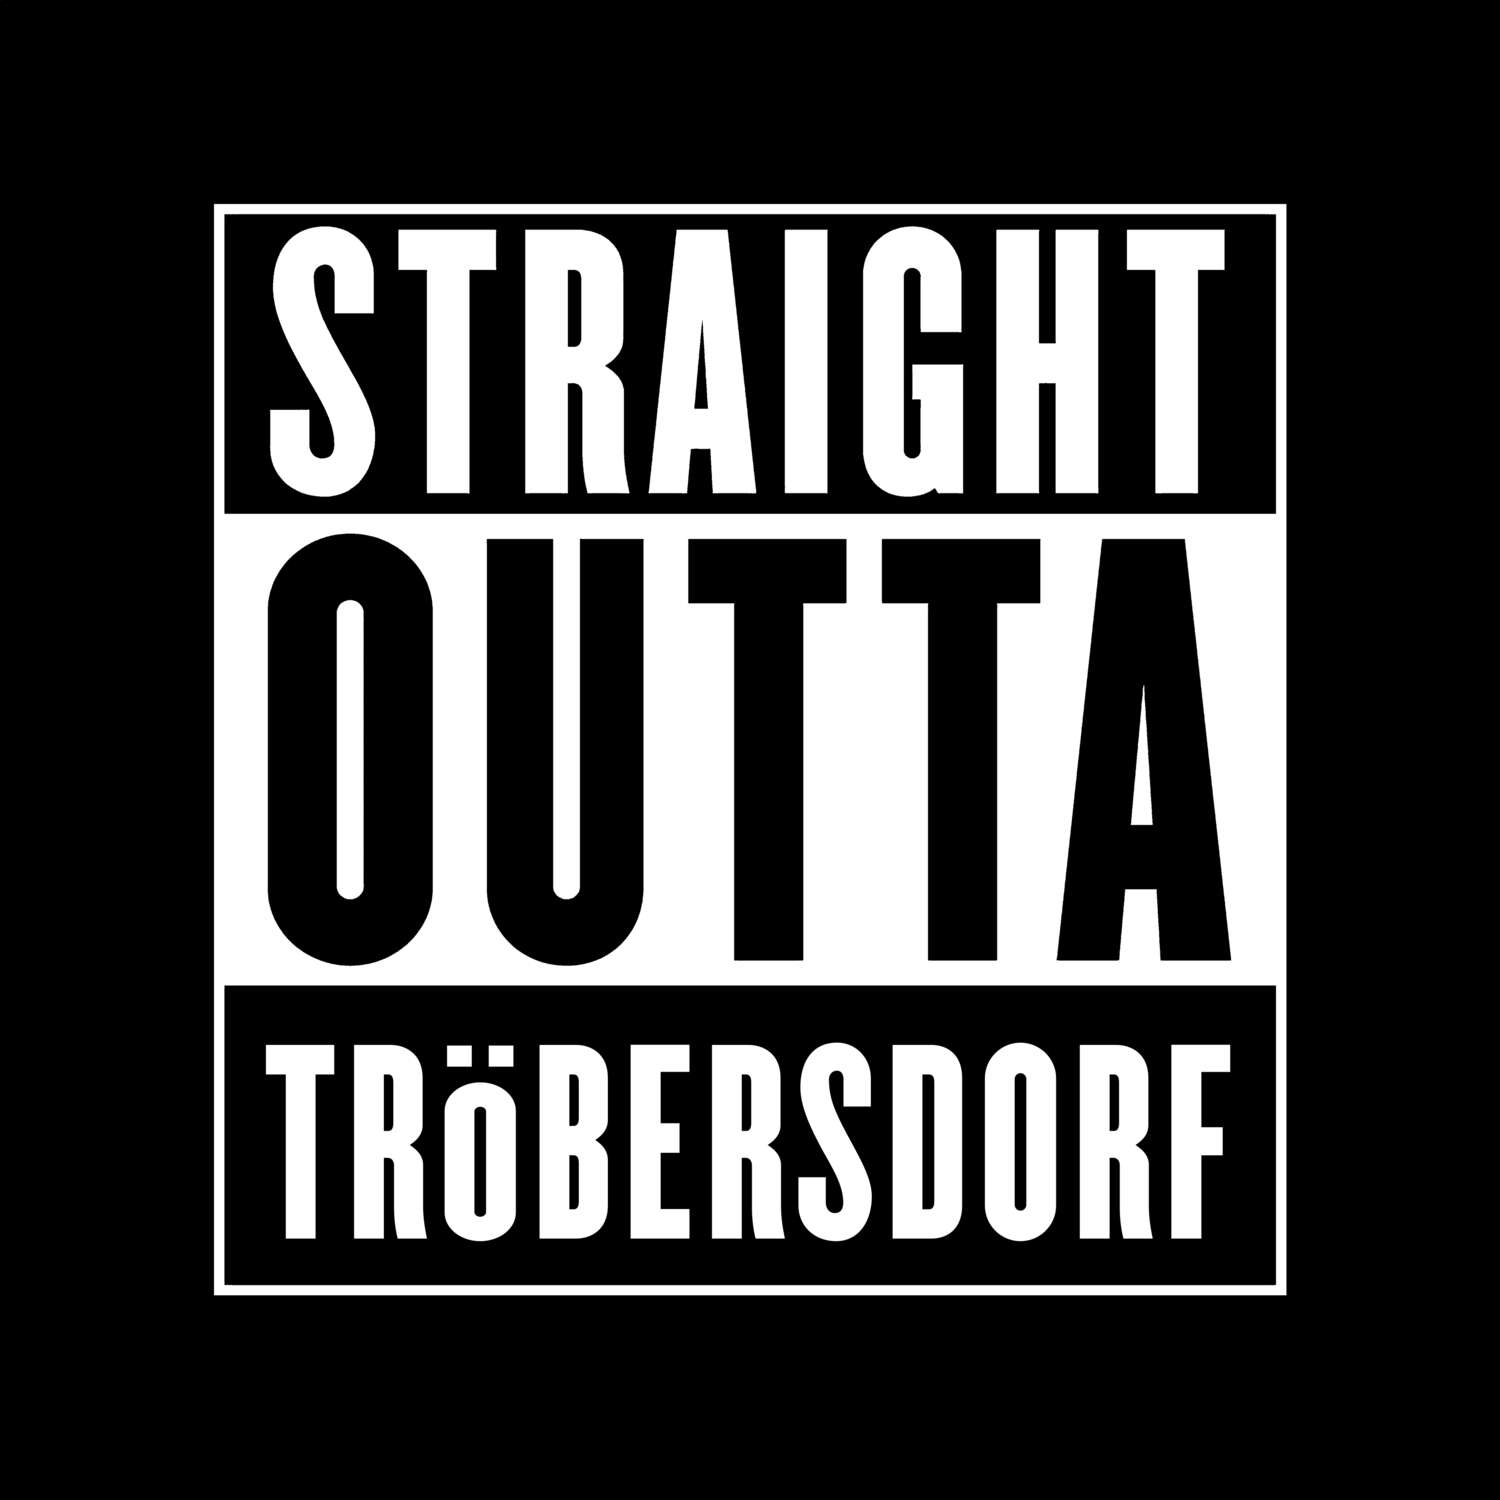 Tröbersdorf T-Shirt »Straight Outta«